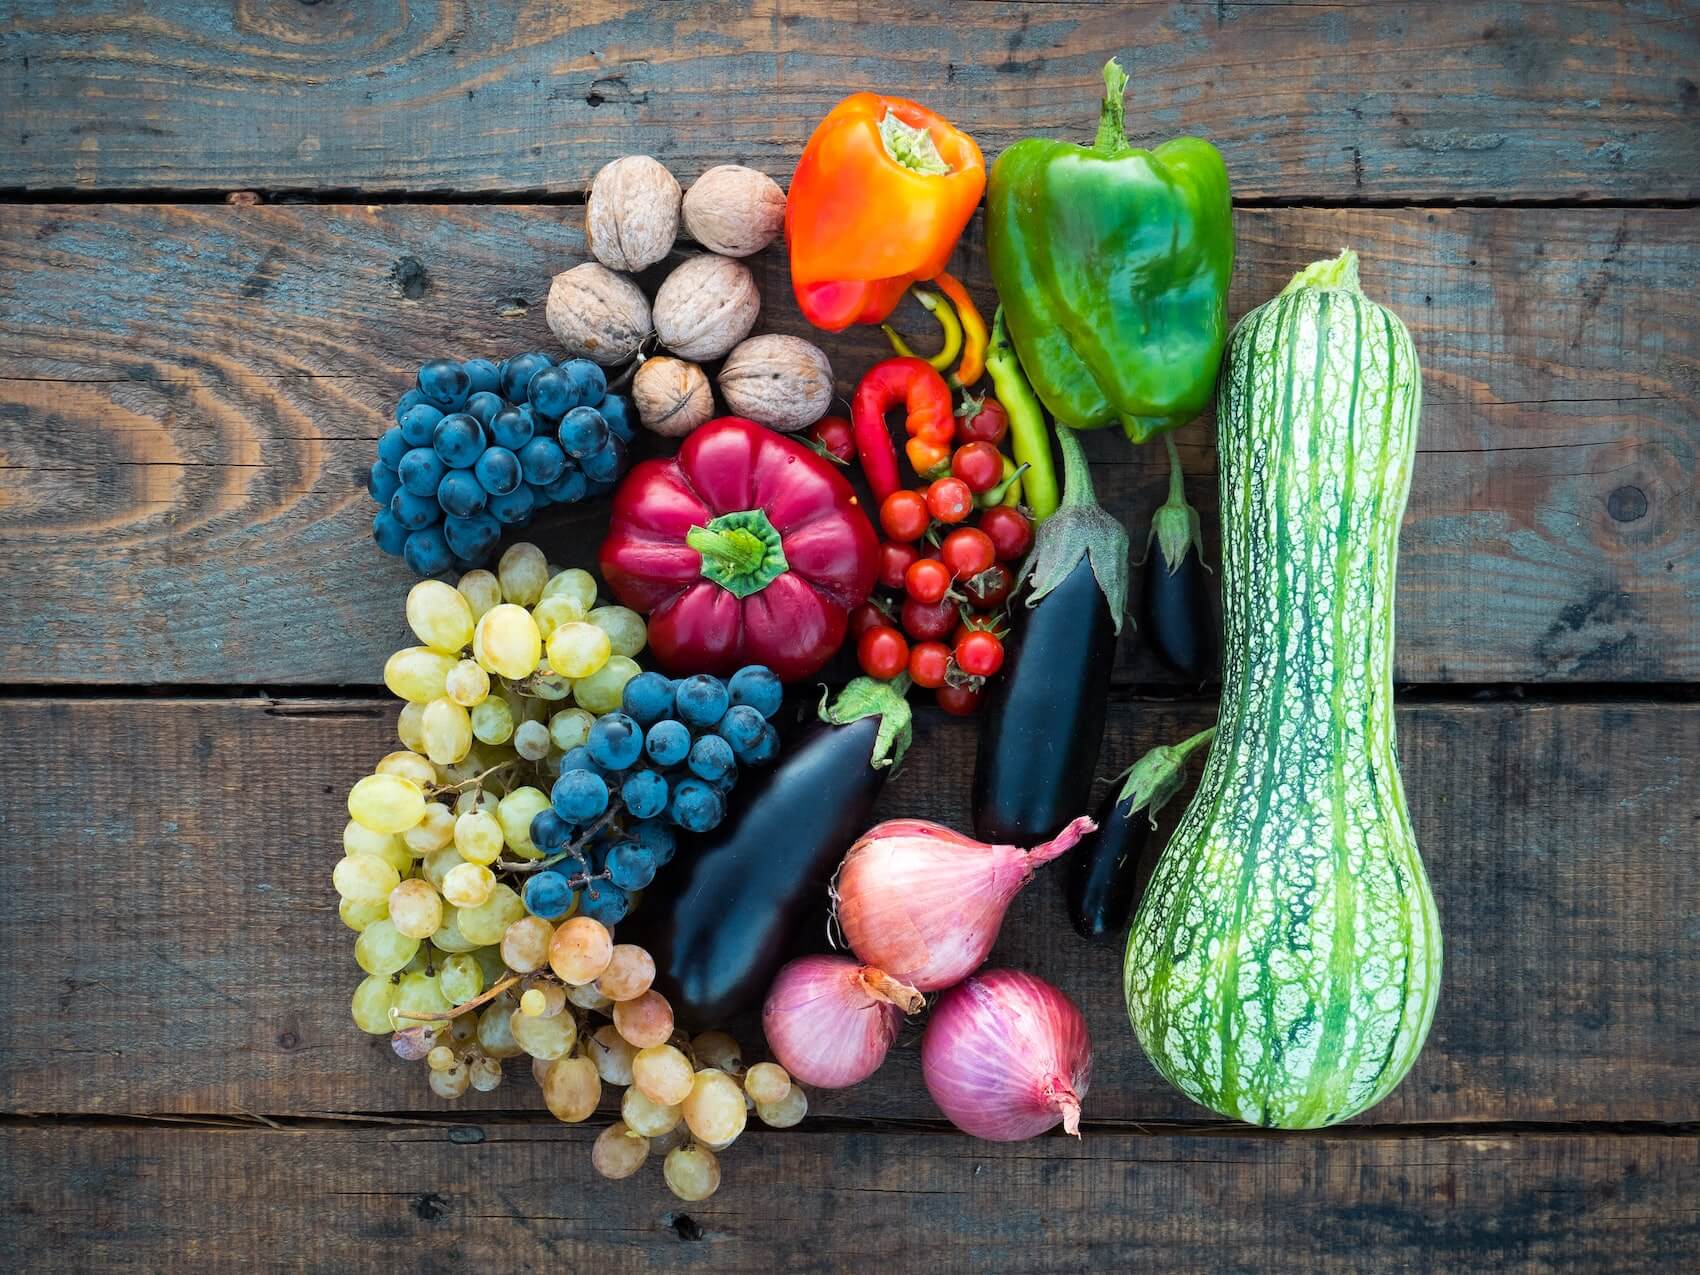 Ein Teller voller buntem Gemüse und Obst – Ayuro